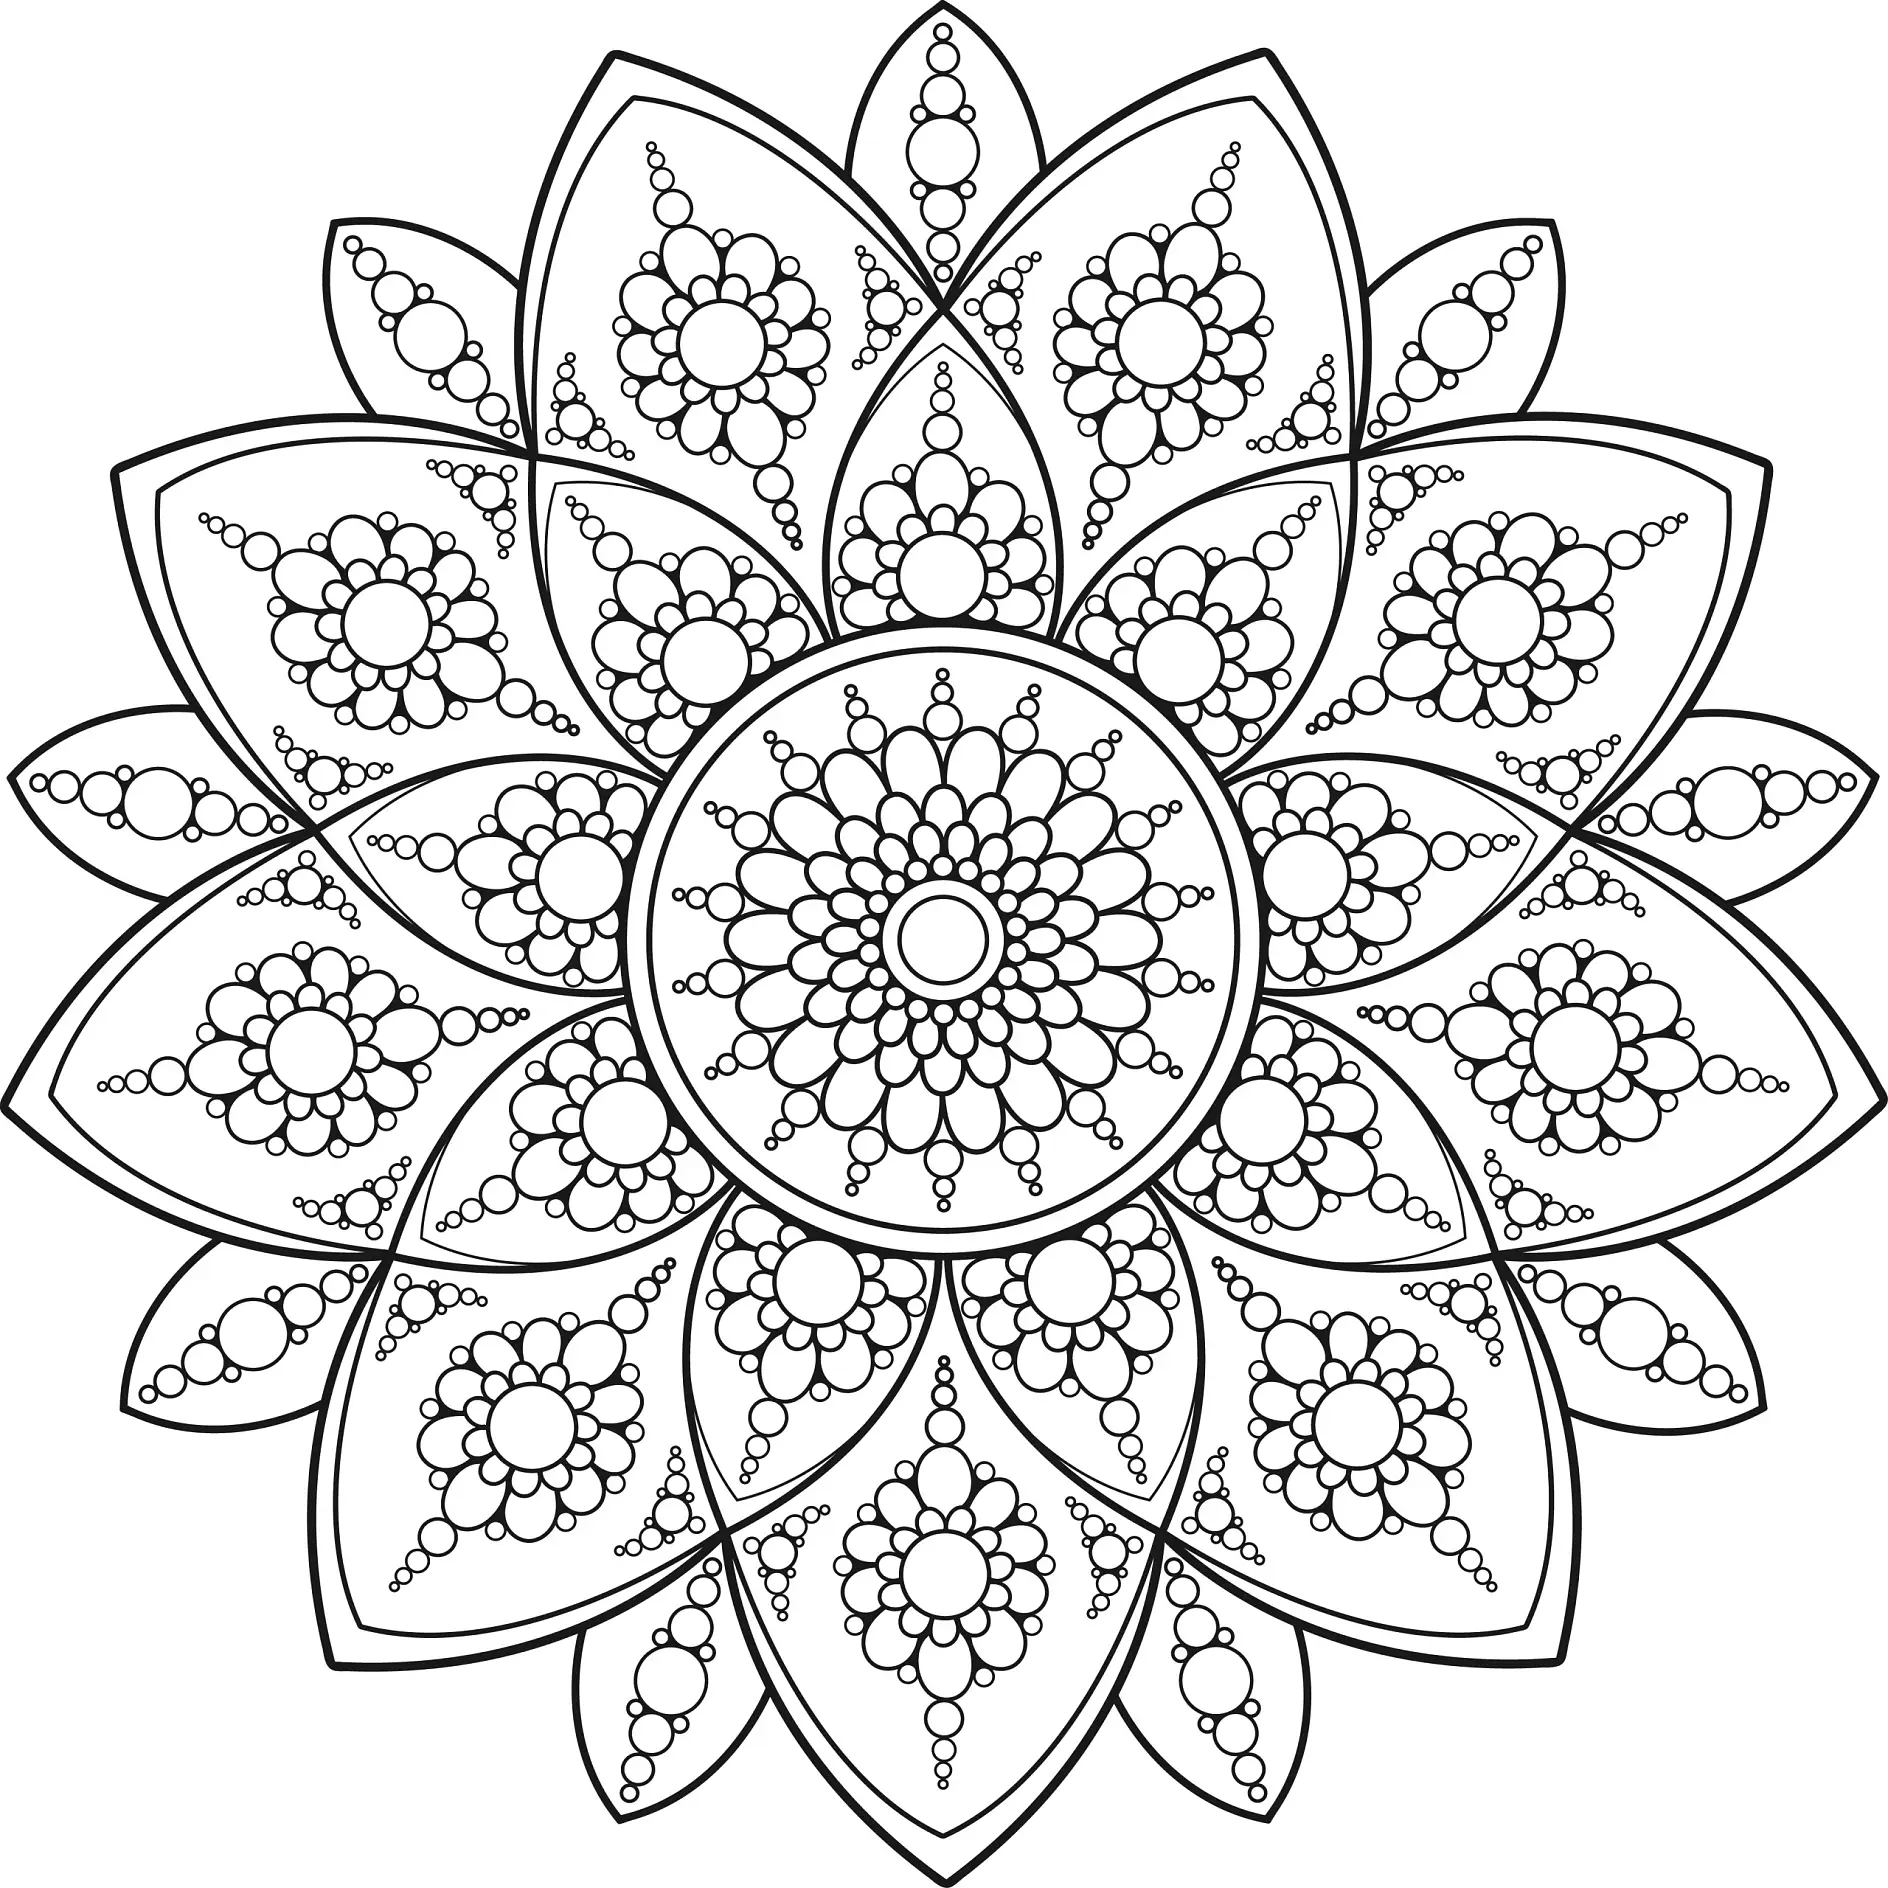 Ausmalbild Mandala mit kreisförmigen Mustern und floralen Elementen